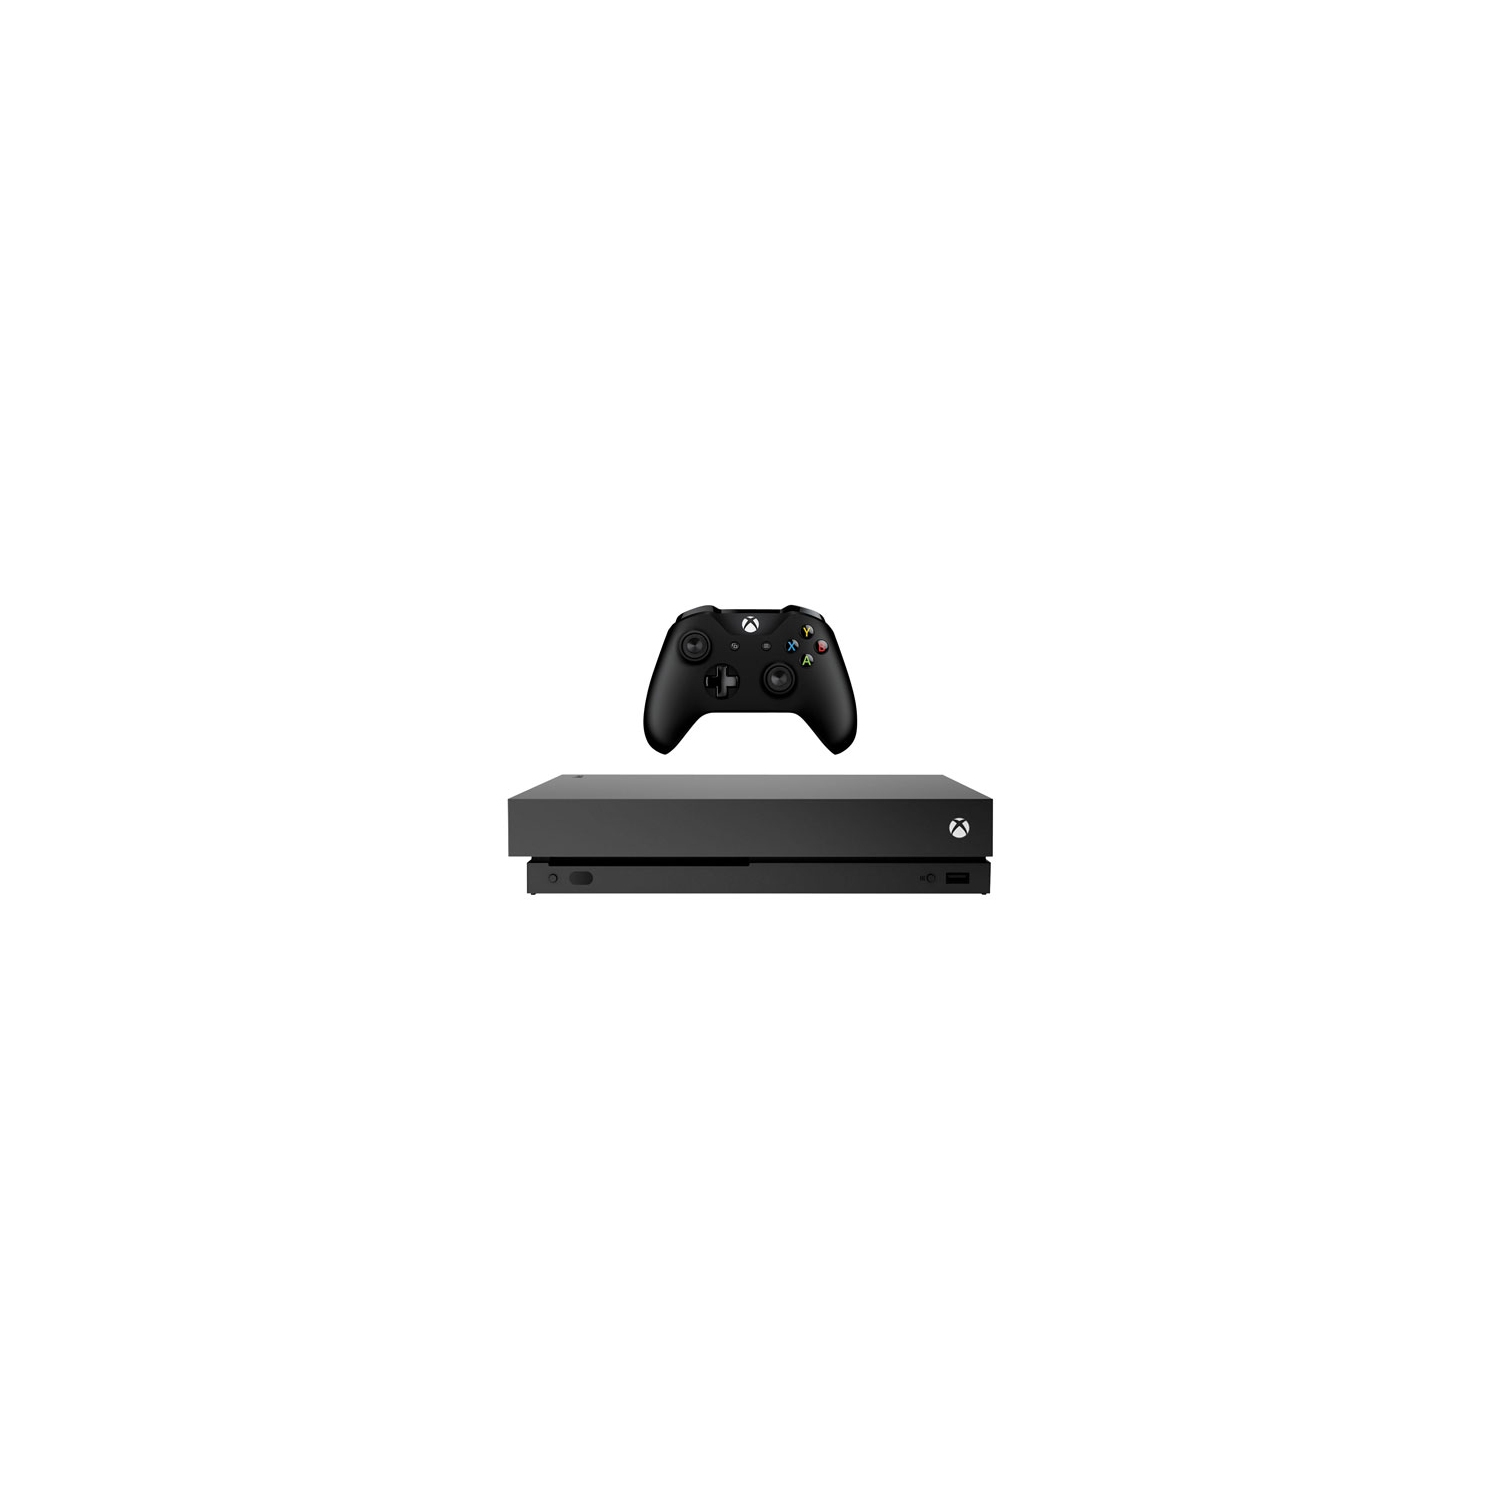 Xbox One X 1TB Console - Black - Open Box